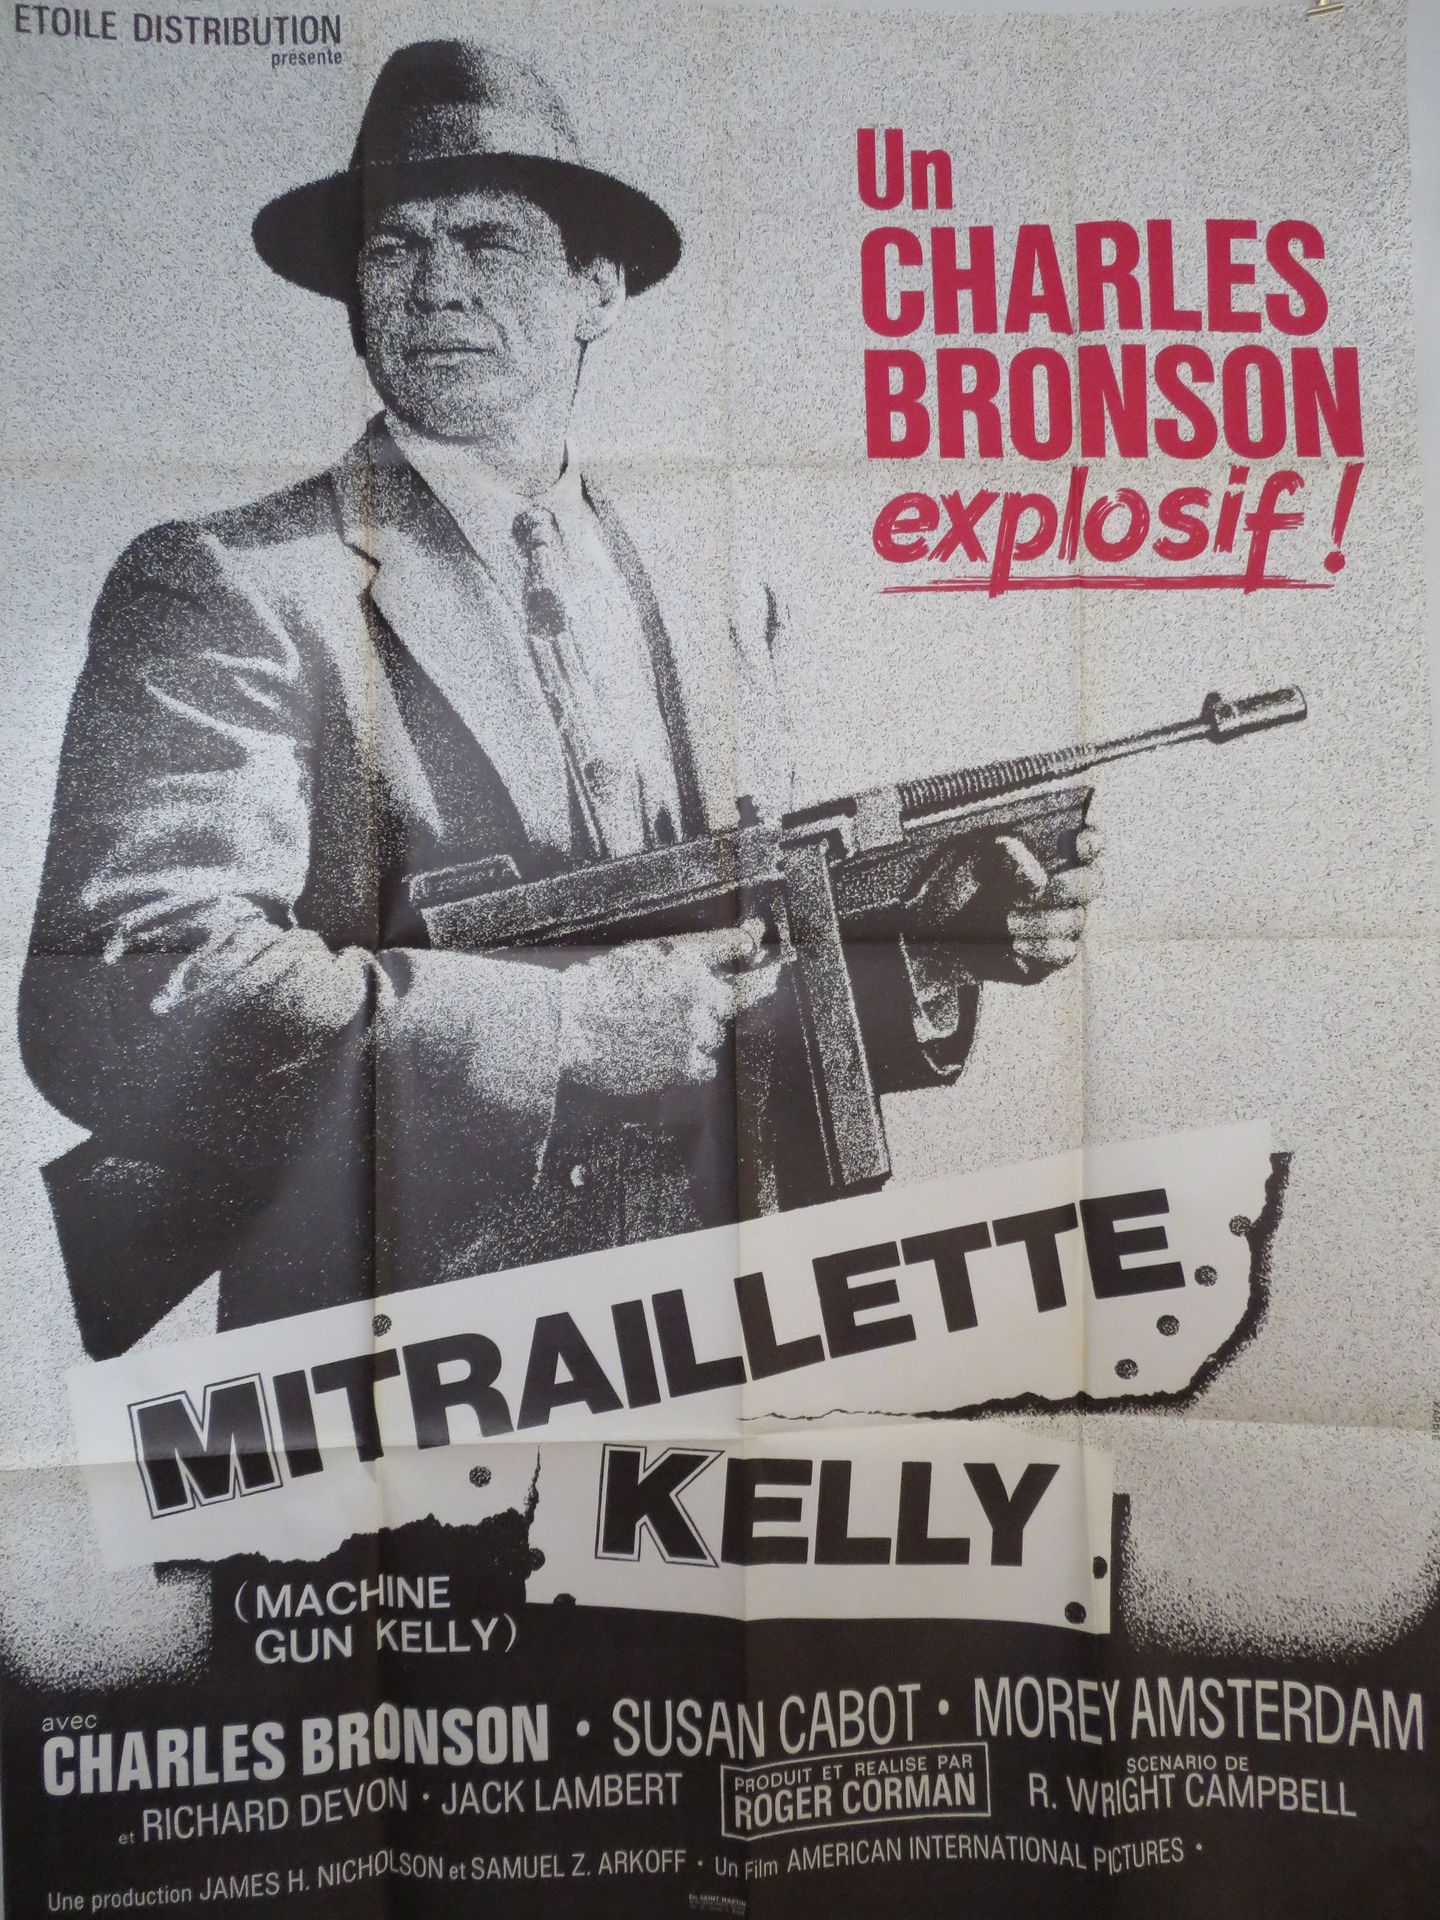 Null "MITRAILLETTE KELLY" (1958) de Roger CORMAN con Charles Bronson - Ilustrado&hellip;